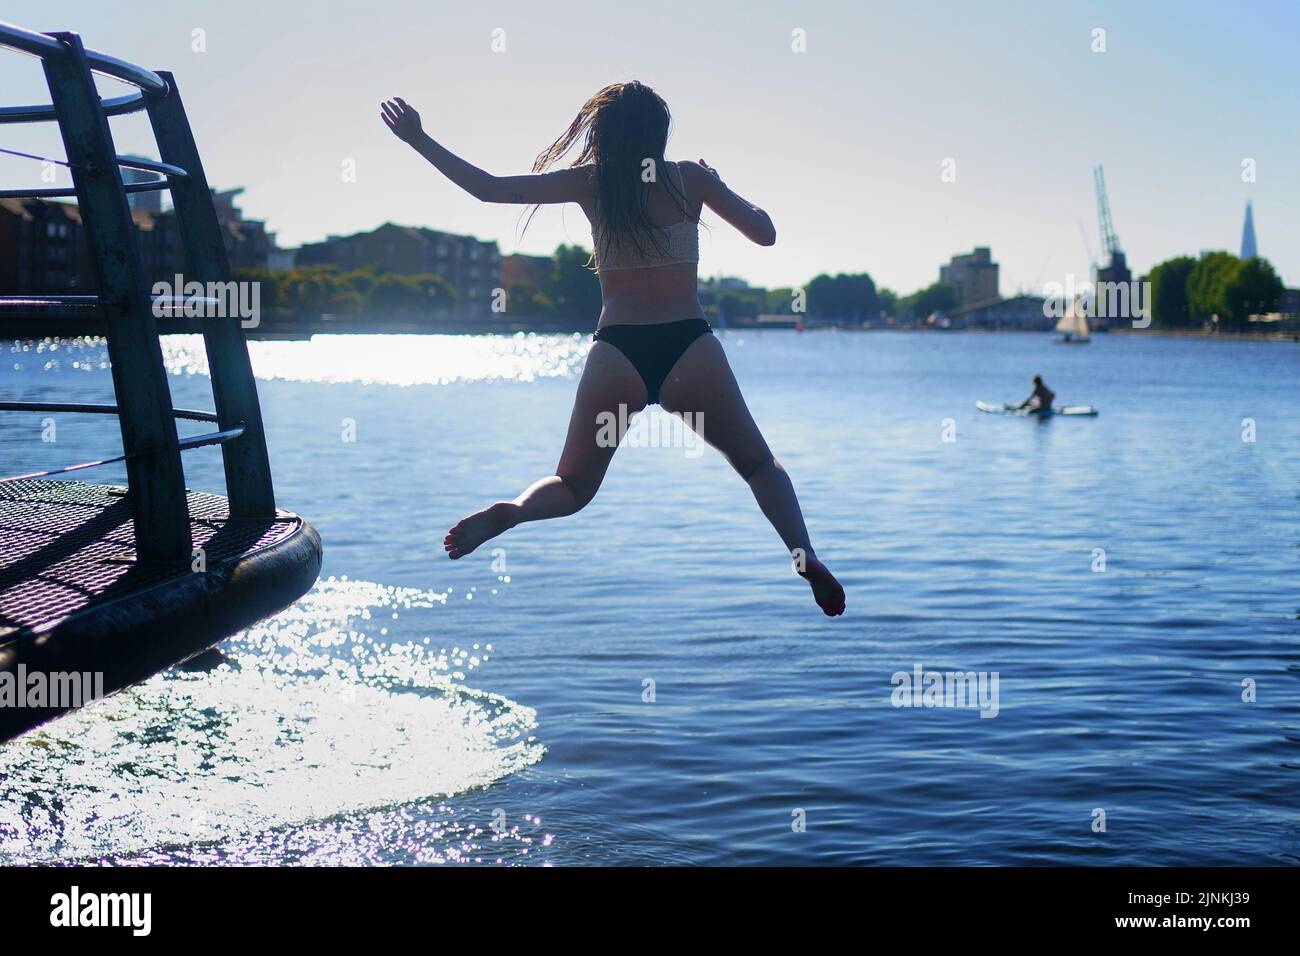 Eine Frau springt auf der Isle of Dogs im Osten Londons ins Wasser. Für einige Teile Englands wird am Freitag eine Dürre ausgerufen, wobei die Temperaturen bis 35C Grad erreichen werden, was das Land heißer macht als Teile der Karibik. Bilddatum: Freitag, 12. August 2022. Stockfoto